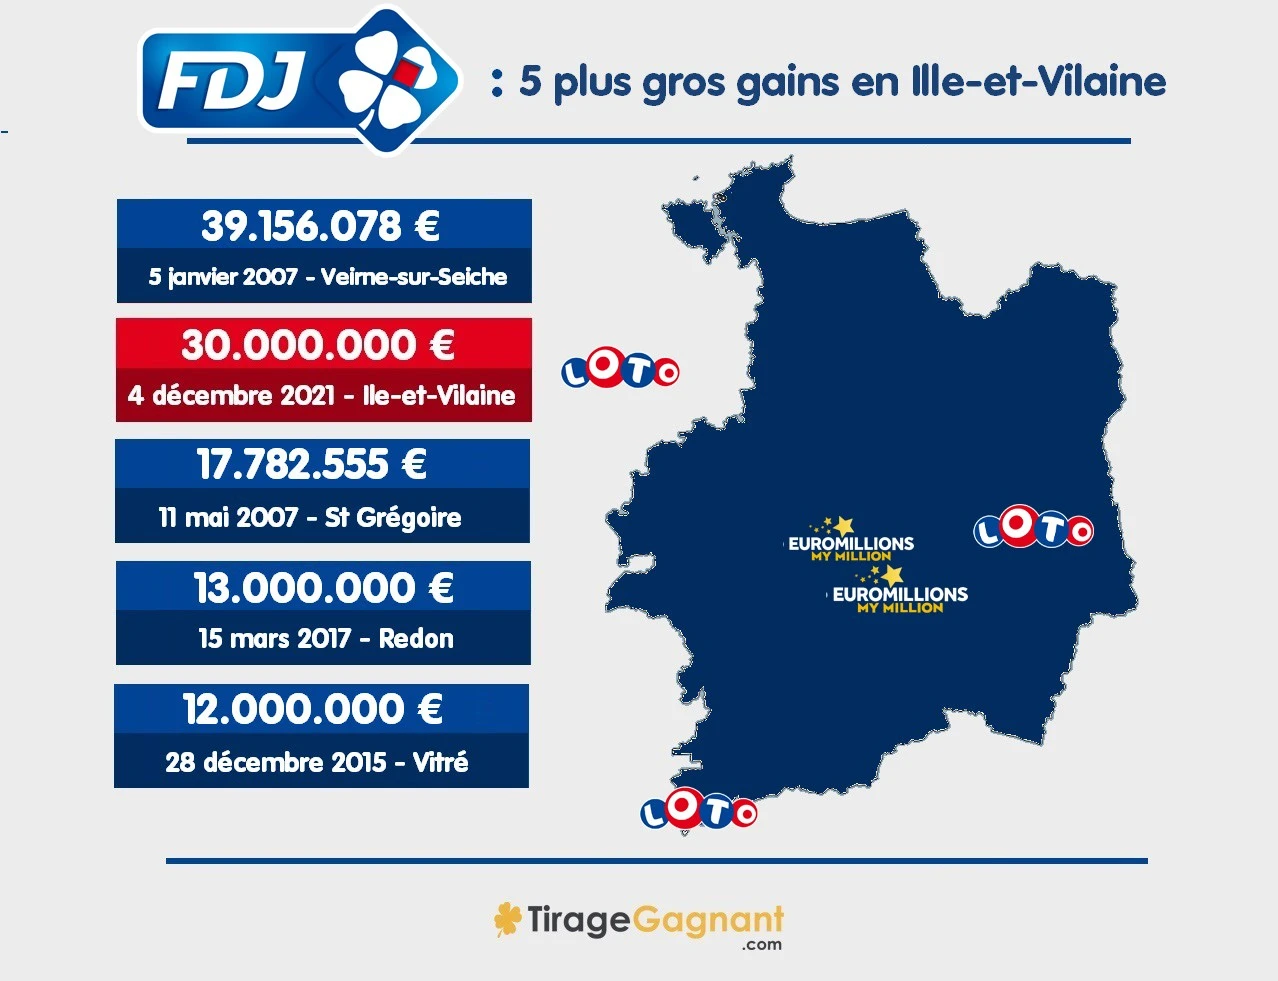 5 plus gros gains FDJ en Ille-et-Vilaine